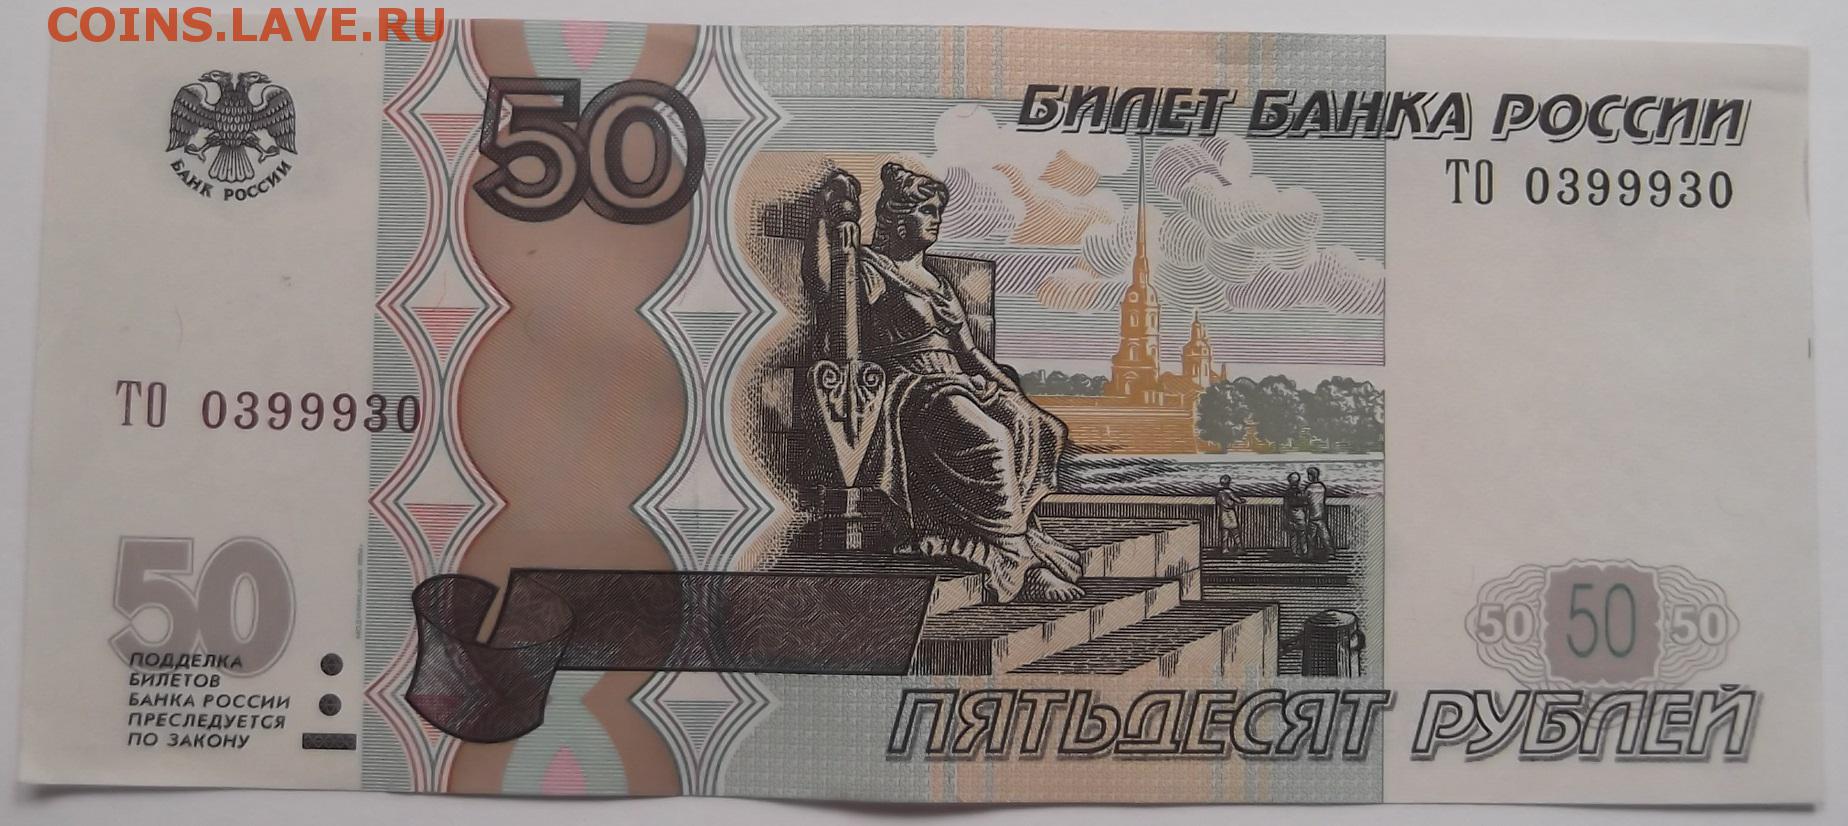 Лицевая сторона купюр рублей. 50 Рублей. Купюра 50 рублей. Российские банкноты 50 рублей. Банкнота 50 руб.